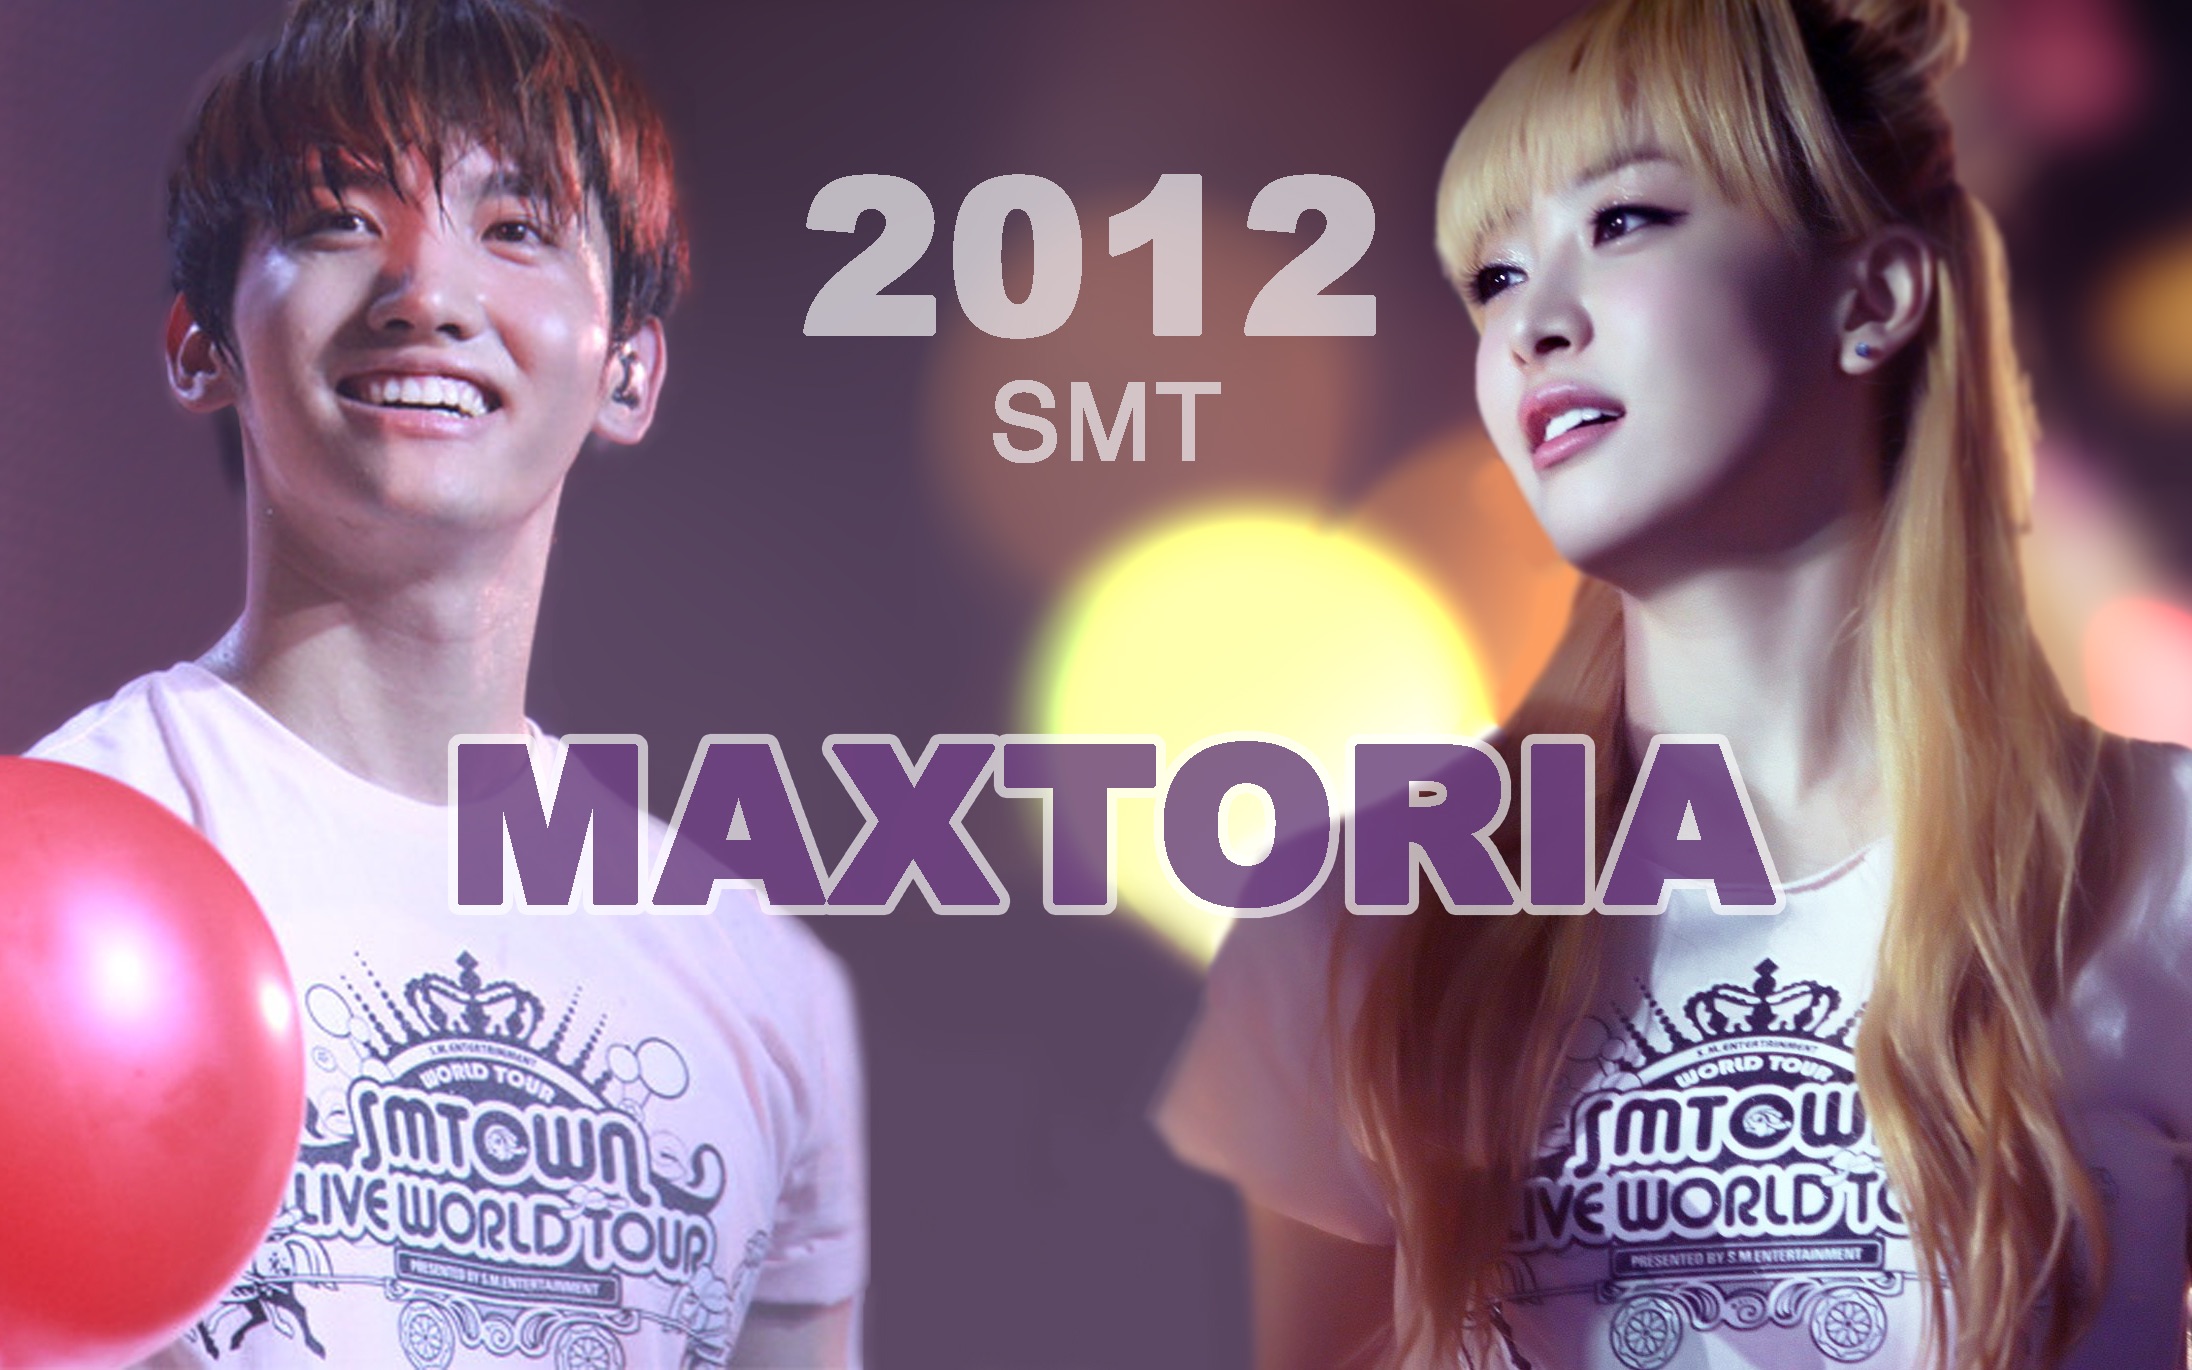 昌茜|maxtoria2012smt家族演唱会ending遗漏糖?